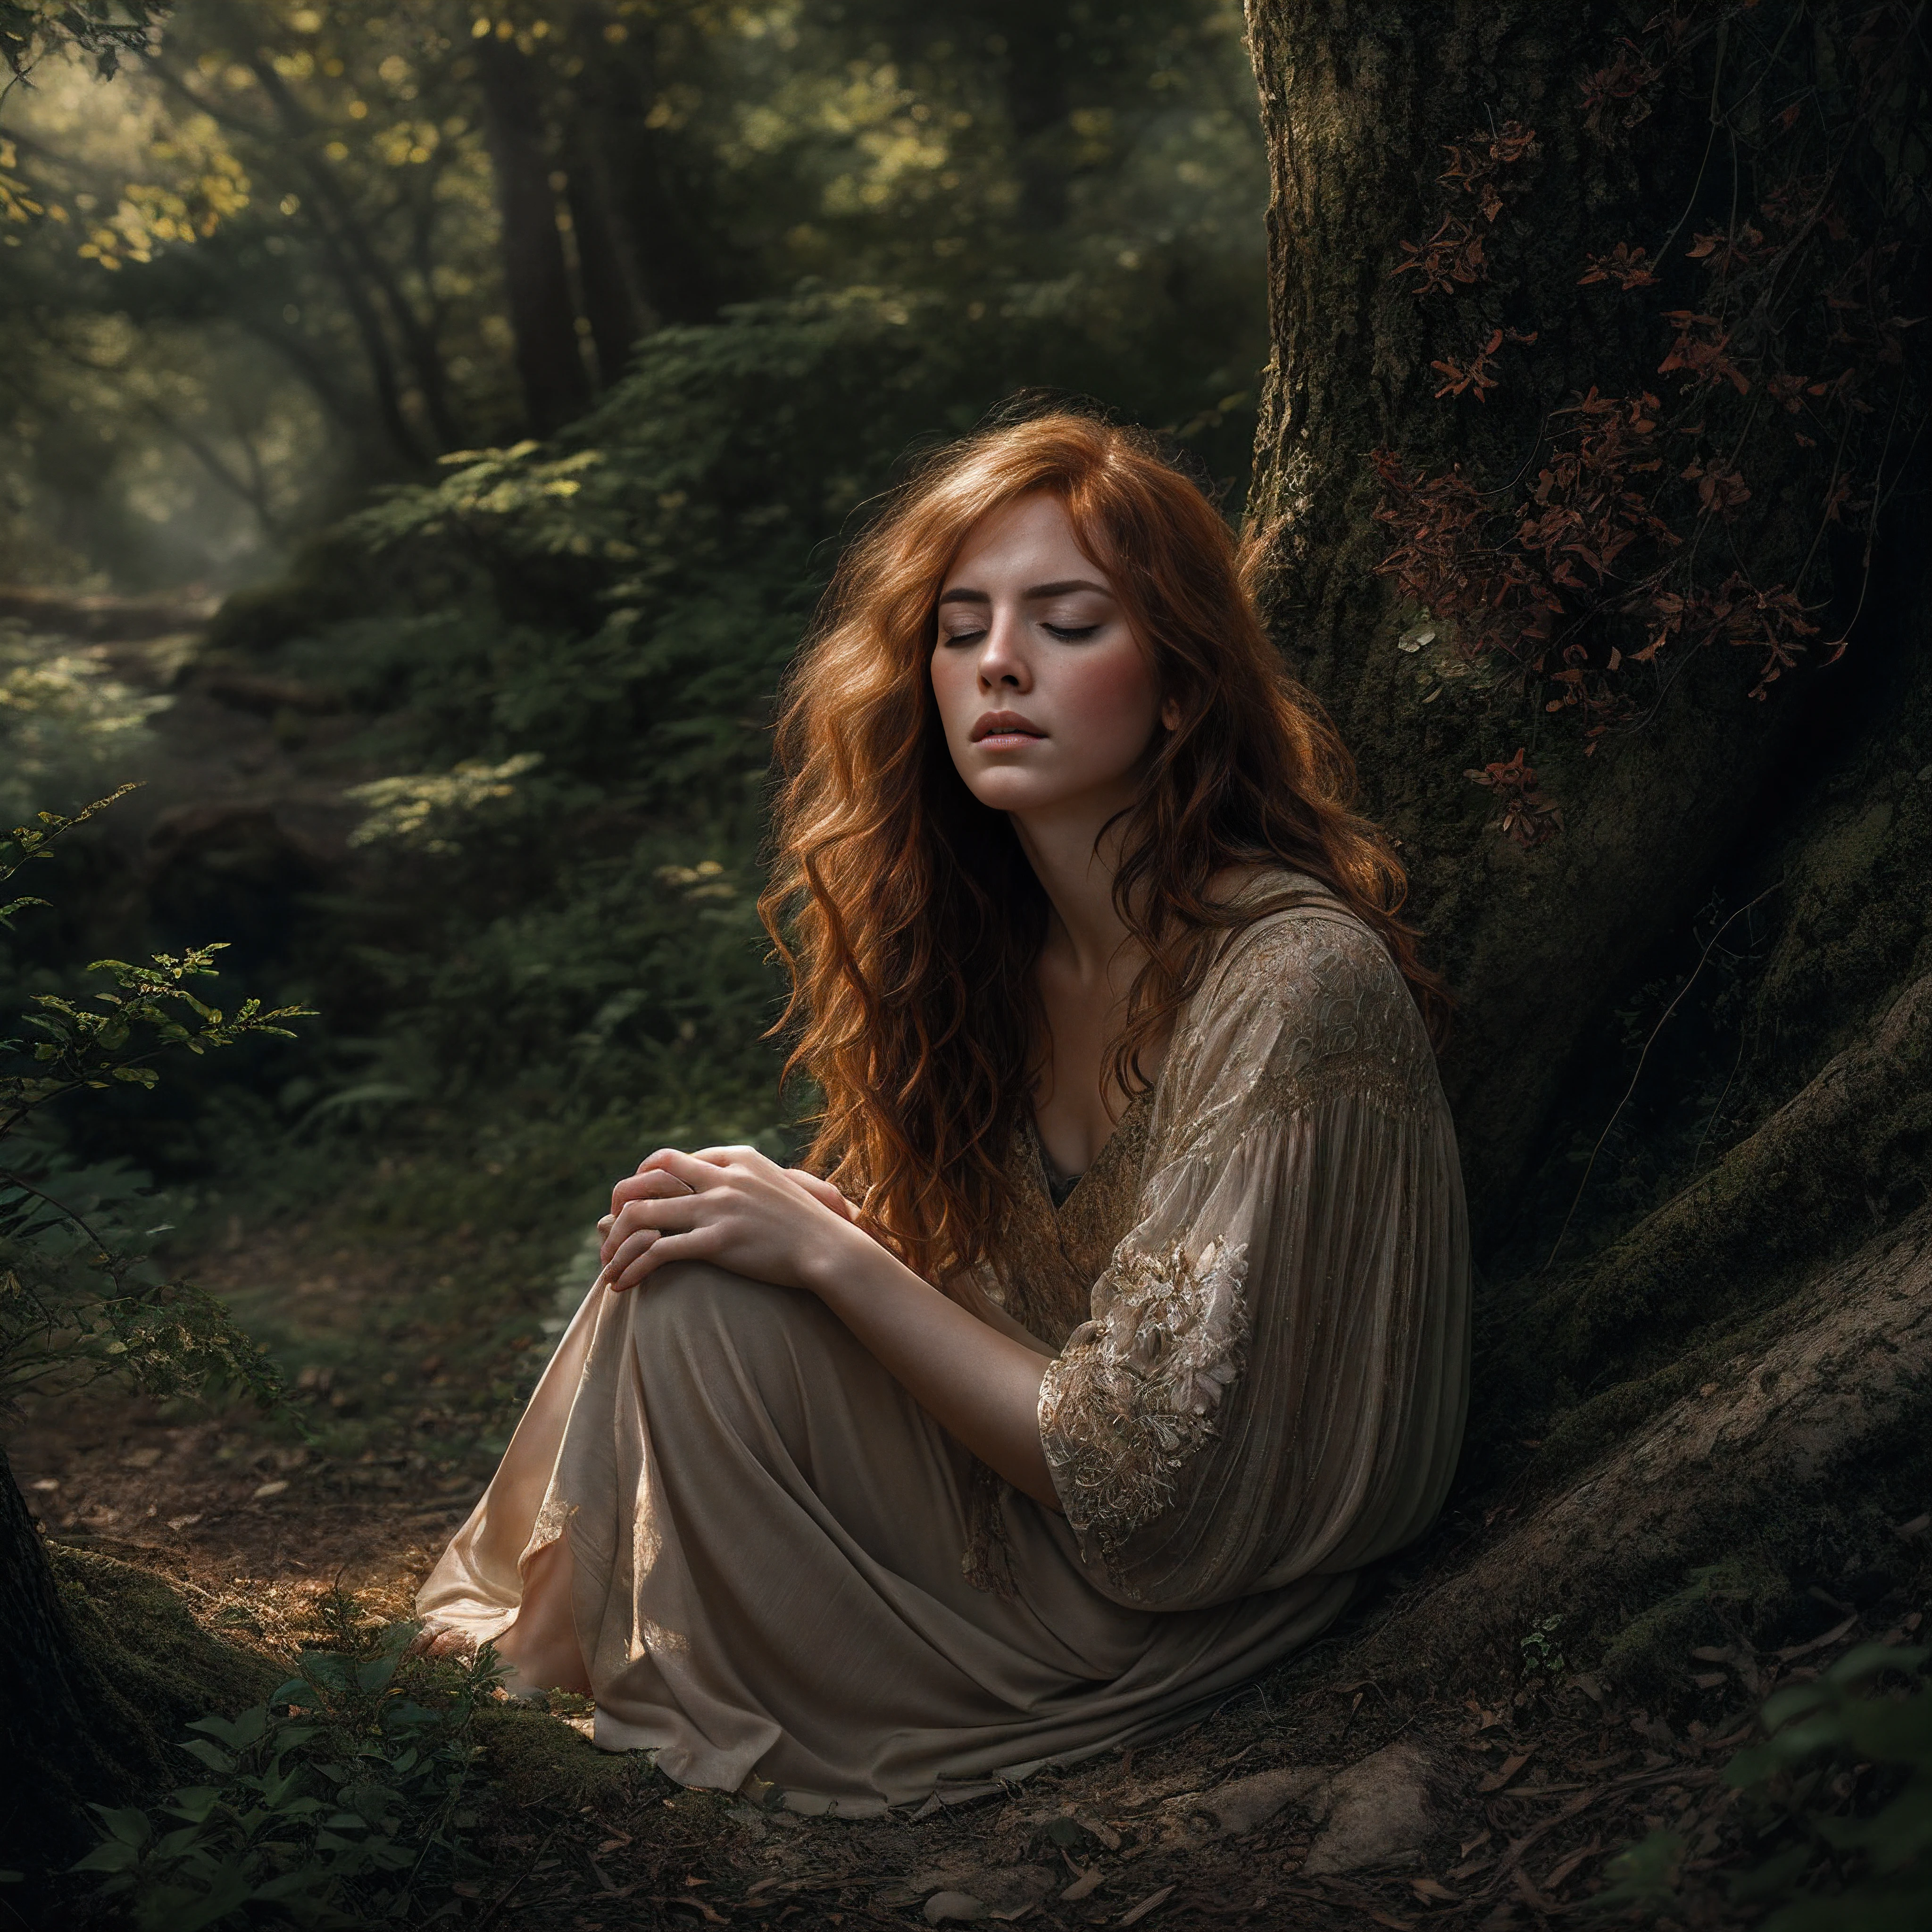 古代の森の谷間に静かにひざまずく美しい赤毛の女性を描いた絶妙な肖像画, 物思いにふけりながら目を閉じる, 斑点模様の日光に愛撫された繊細な顔立ち, 愛らしいそばかすが飾られた完璧な肌, 燃えるような髪が森のそよ風にそっと吹かれる, 芸術写真プリントのスタイルで巧みに構成されている, 映画の静止画のように、音色が豊かで雰囲気のある, 複雑なテクスチャとフィルム粒子がシームレスに統合, 細部にまで細心の注意を払って、全体的に見事な職人技で仕上げられています, この深遠なデジタル絵画は、フォトリアリズムと想像力豊かな芸術性が融合した典型である。.